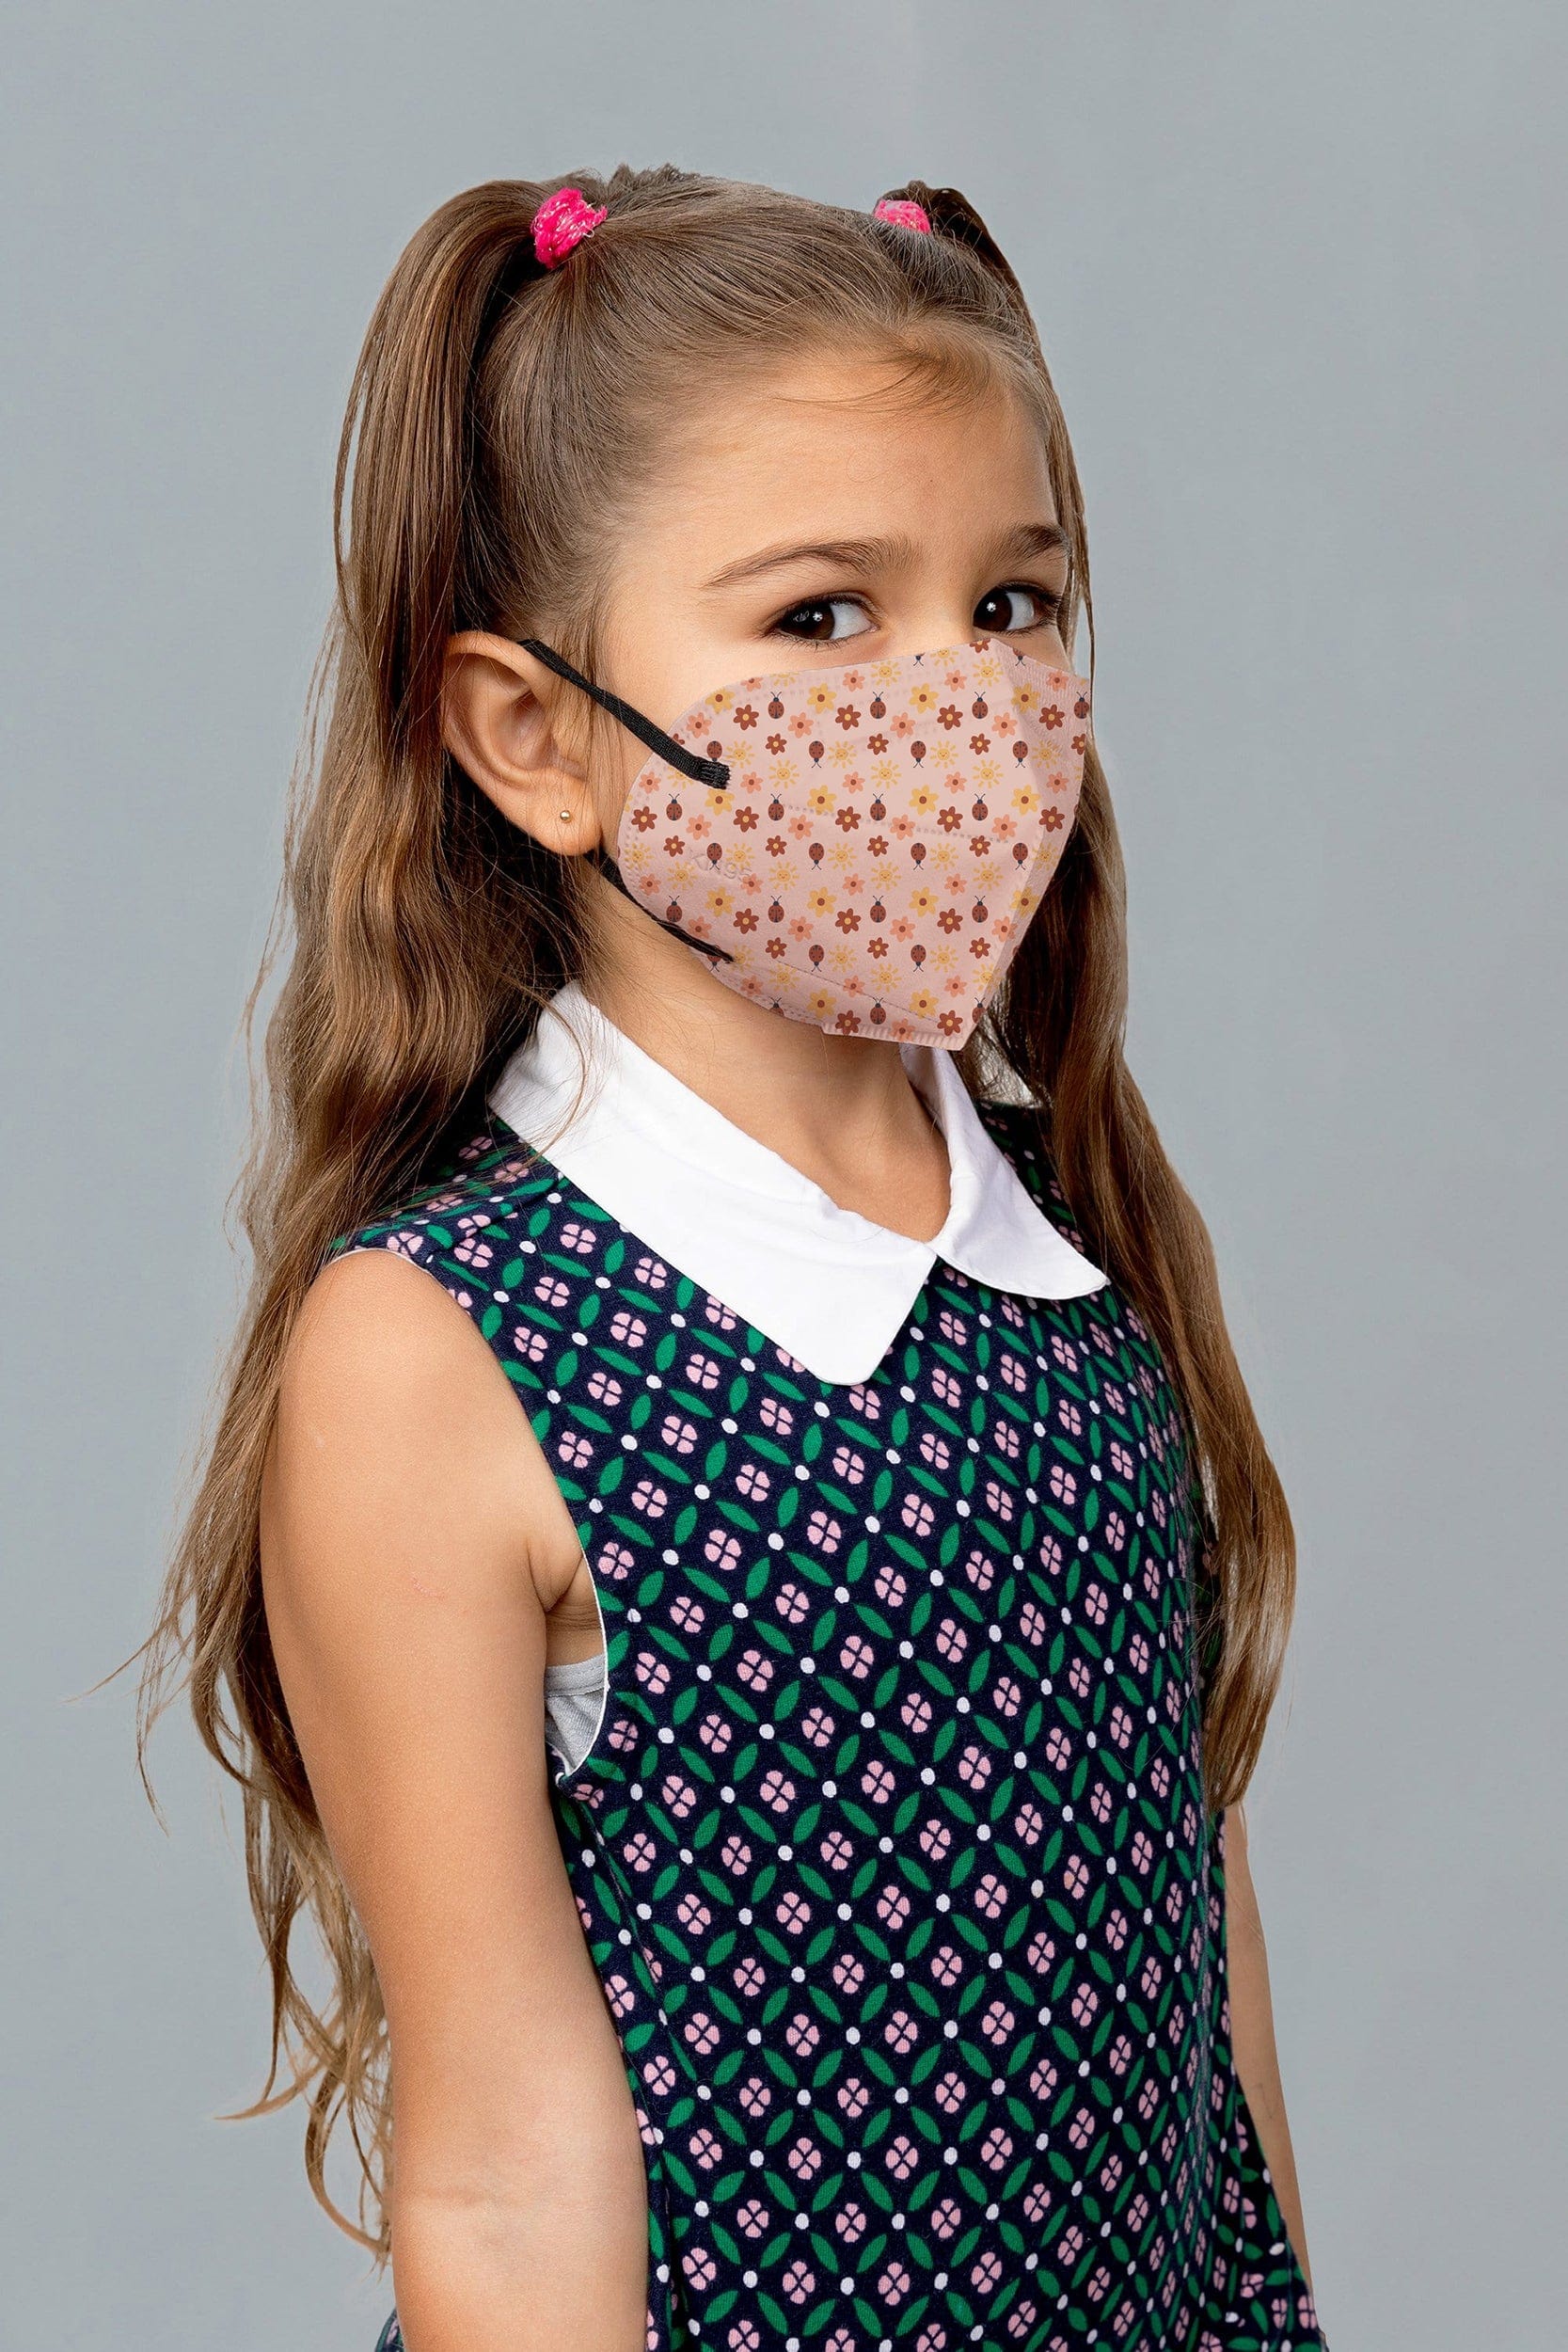 Kids - Ladybug KN95 Face Masks - 10 Pack